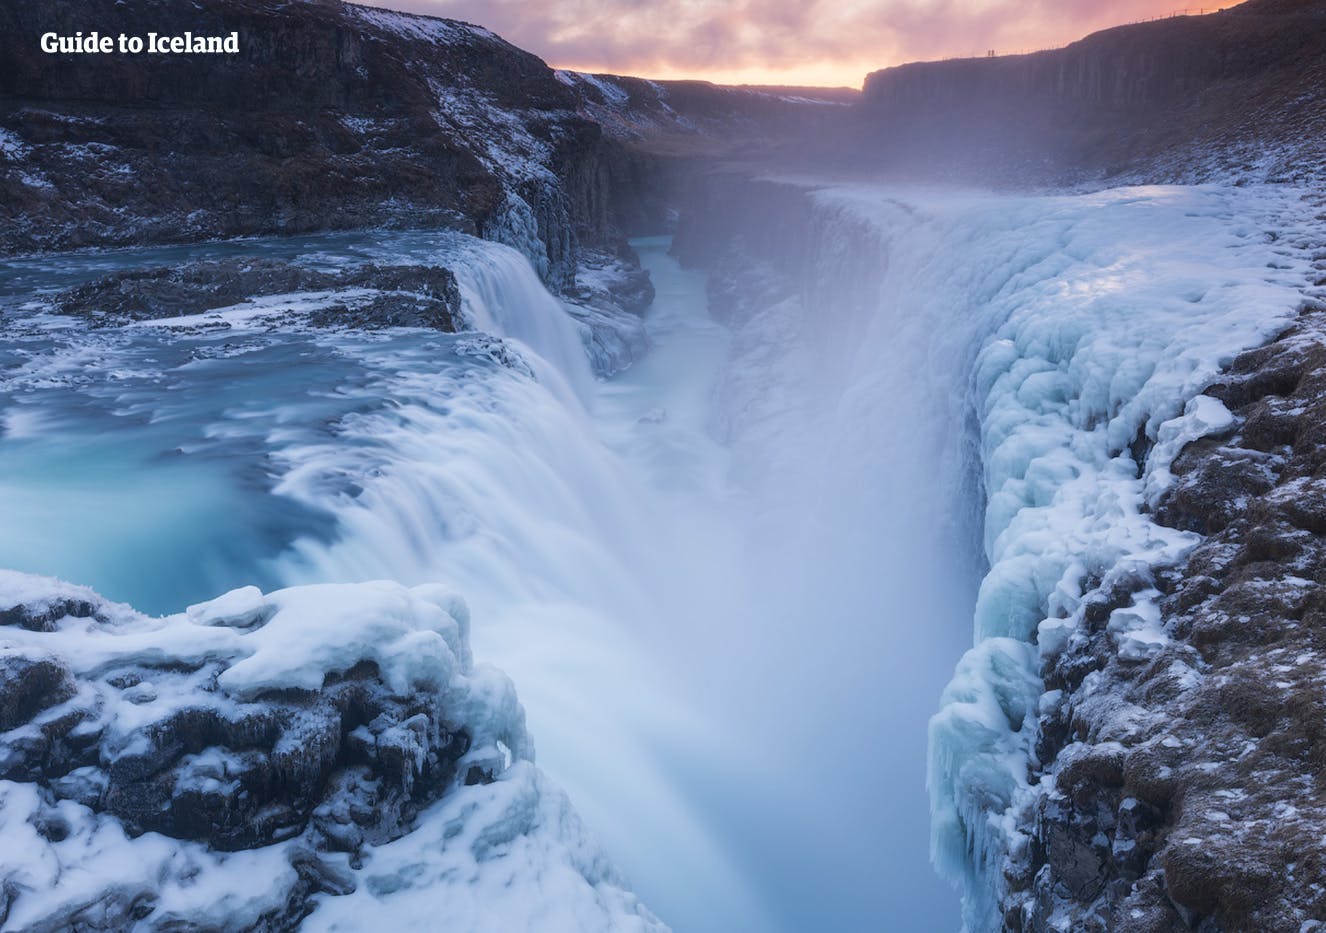 En un valle en el sur de Islandia, que atraviesa un hermoso paisaje rural, se encuentra la famosa cascada Gullfoss del Círculo Dorado.